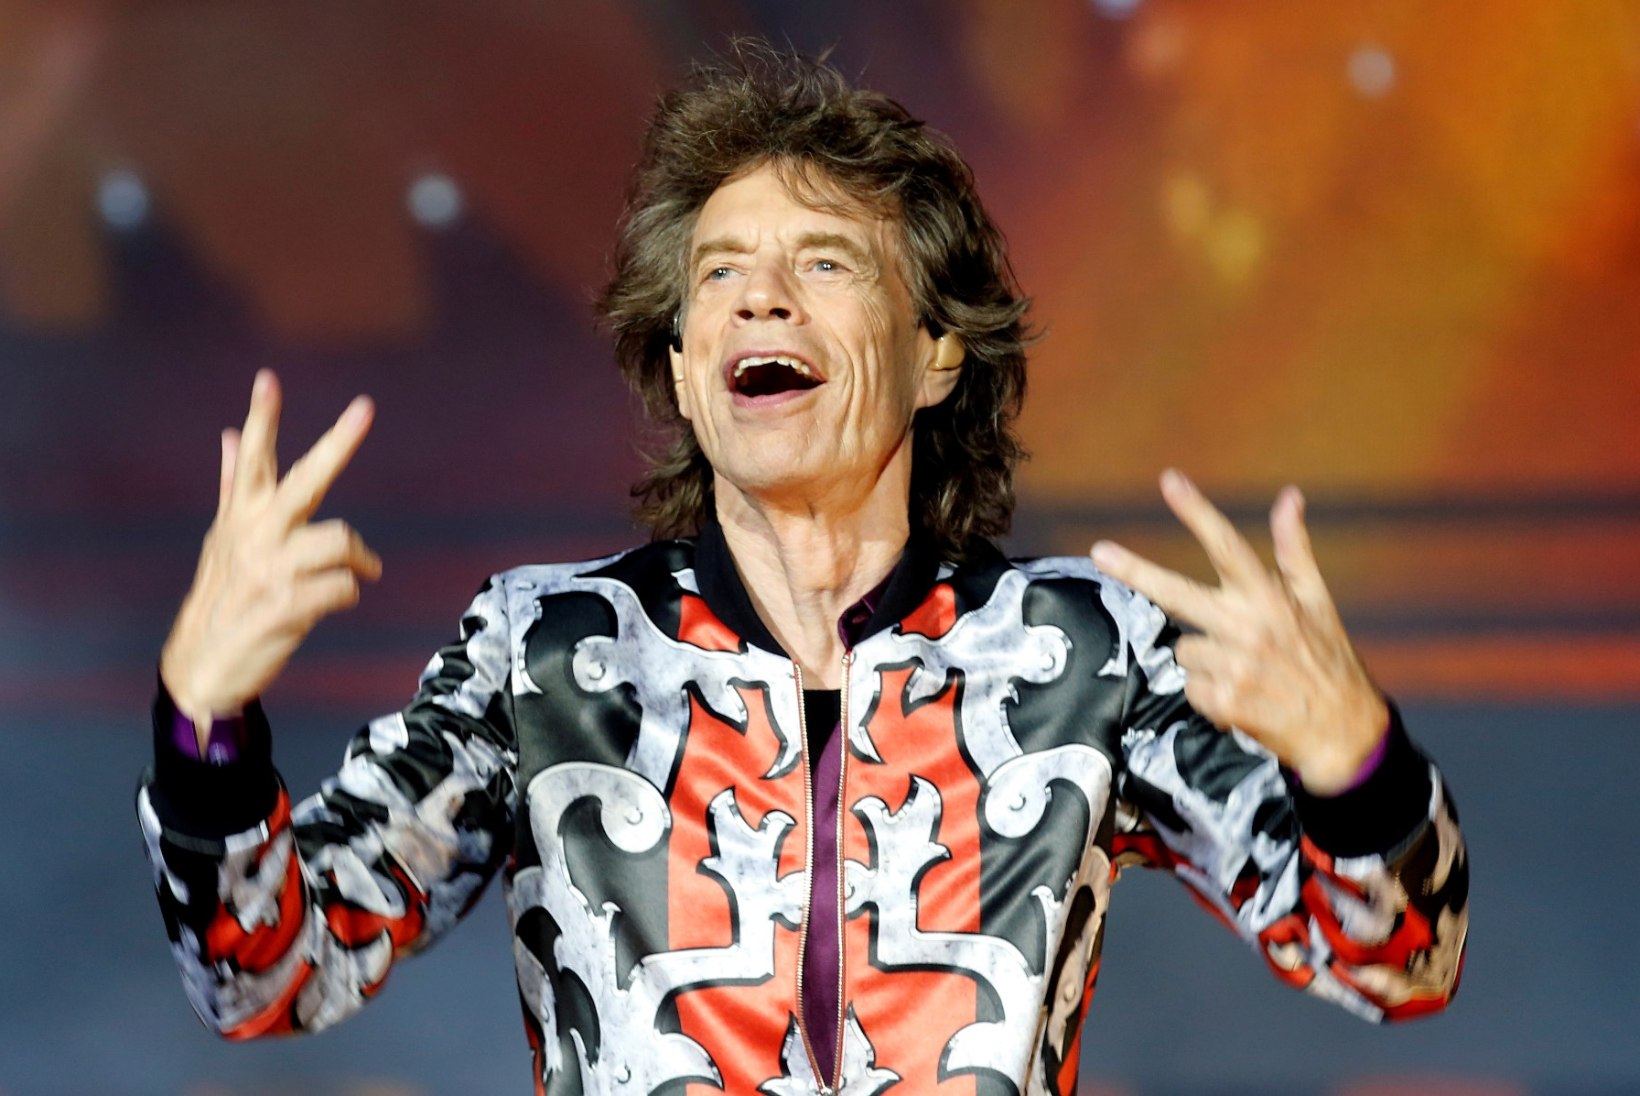 Jaggeri vend: Mick pääses üle noatera eluga